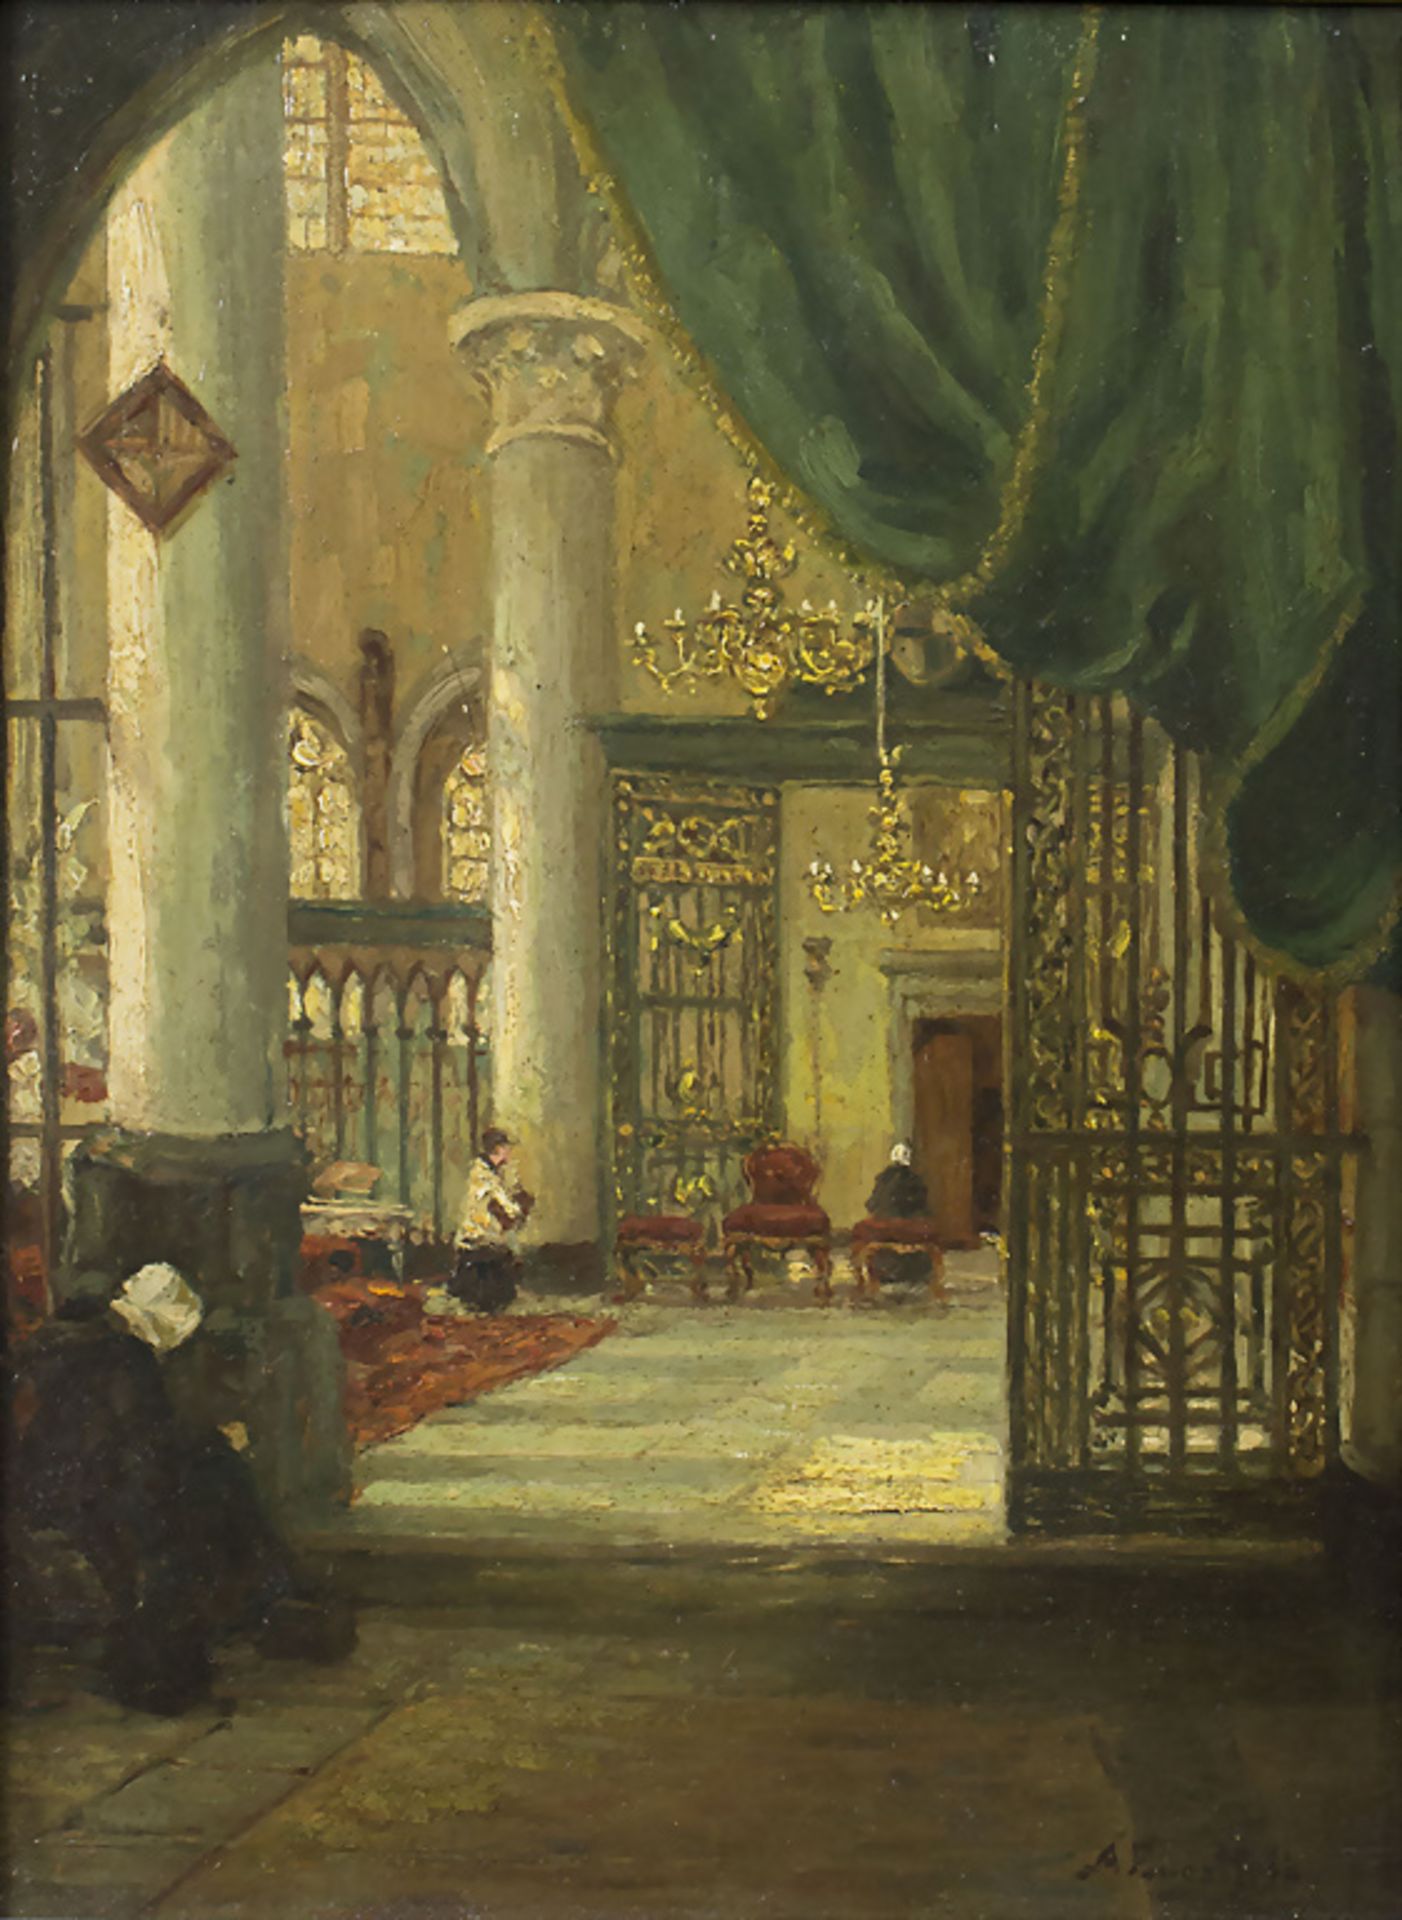 Albert ENGSTFELD (1876-1959), 'Kircheninterieur' / 'Interior of a church'